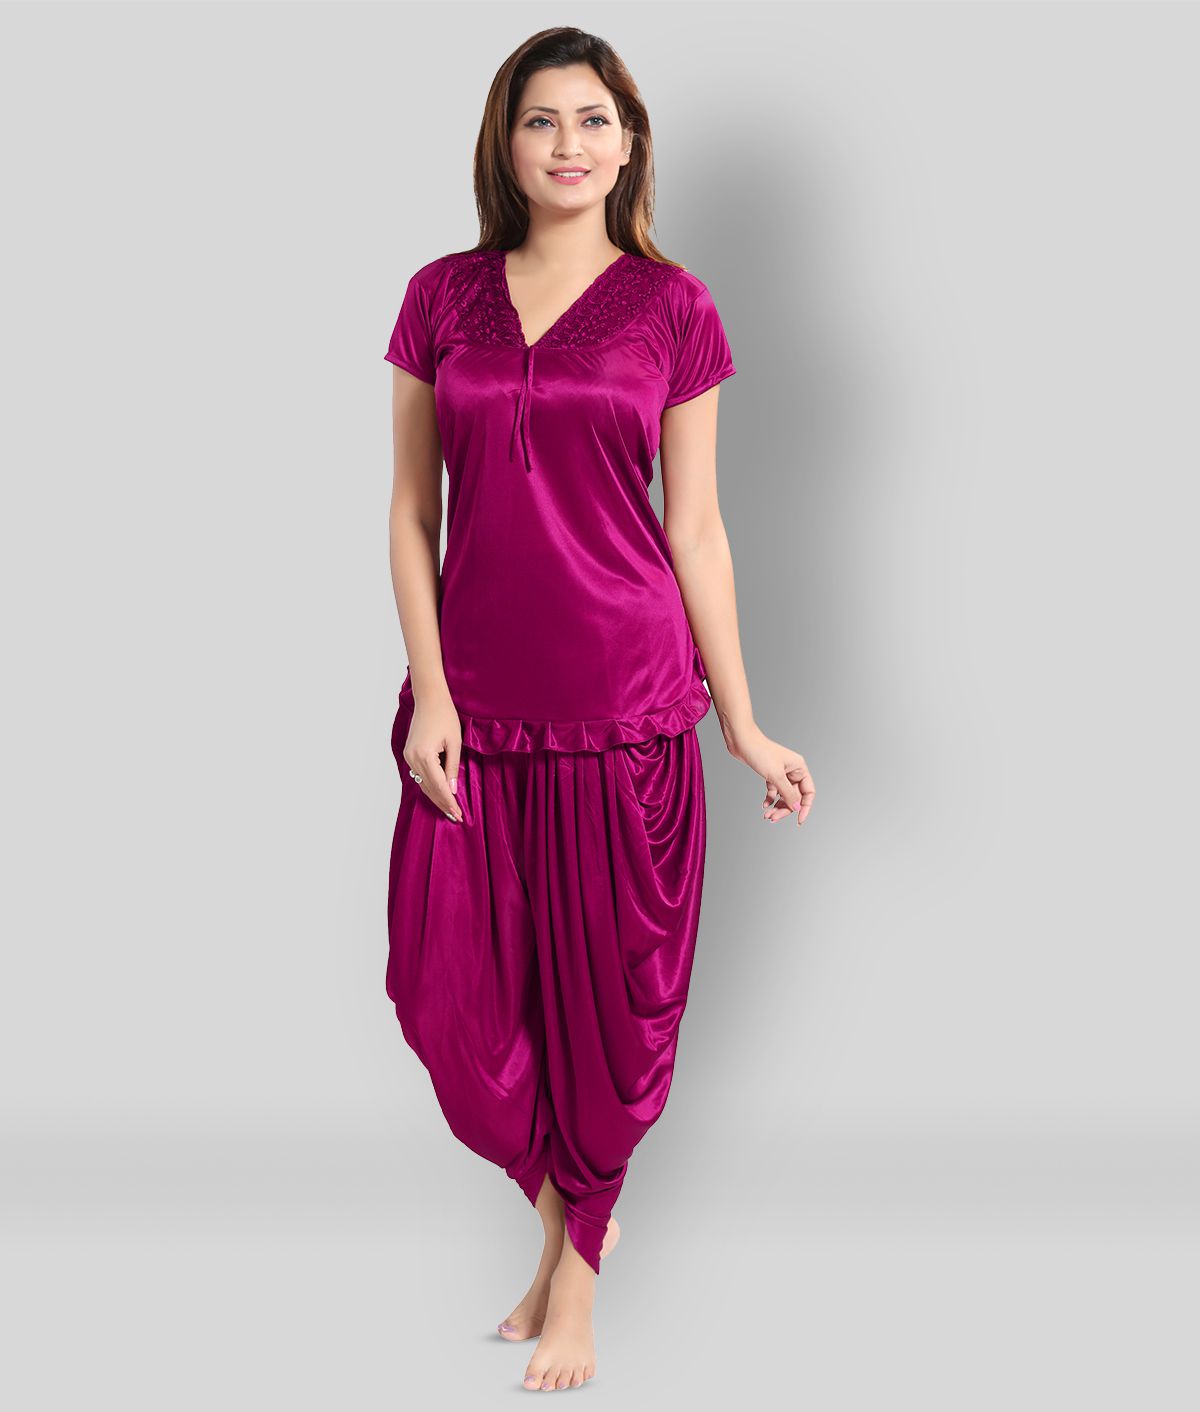     			Romaisa - Pink Satin Women's Nightwear Nightsuit Sets ( Pack of 2 )